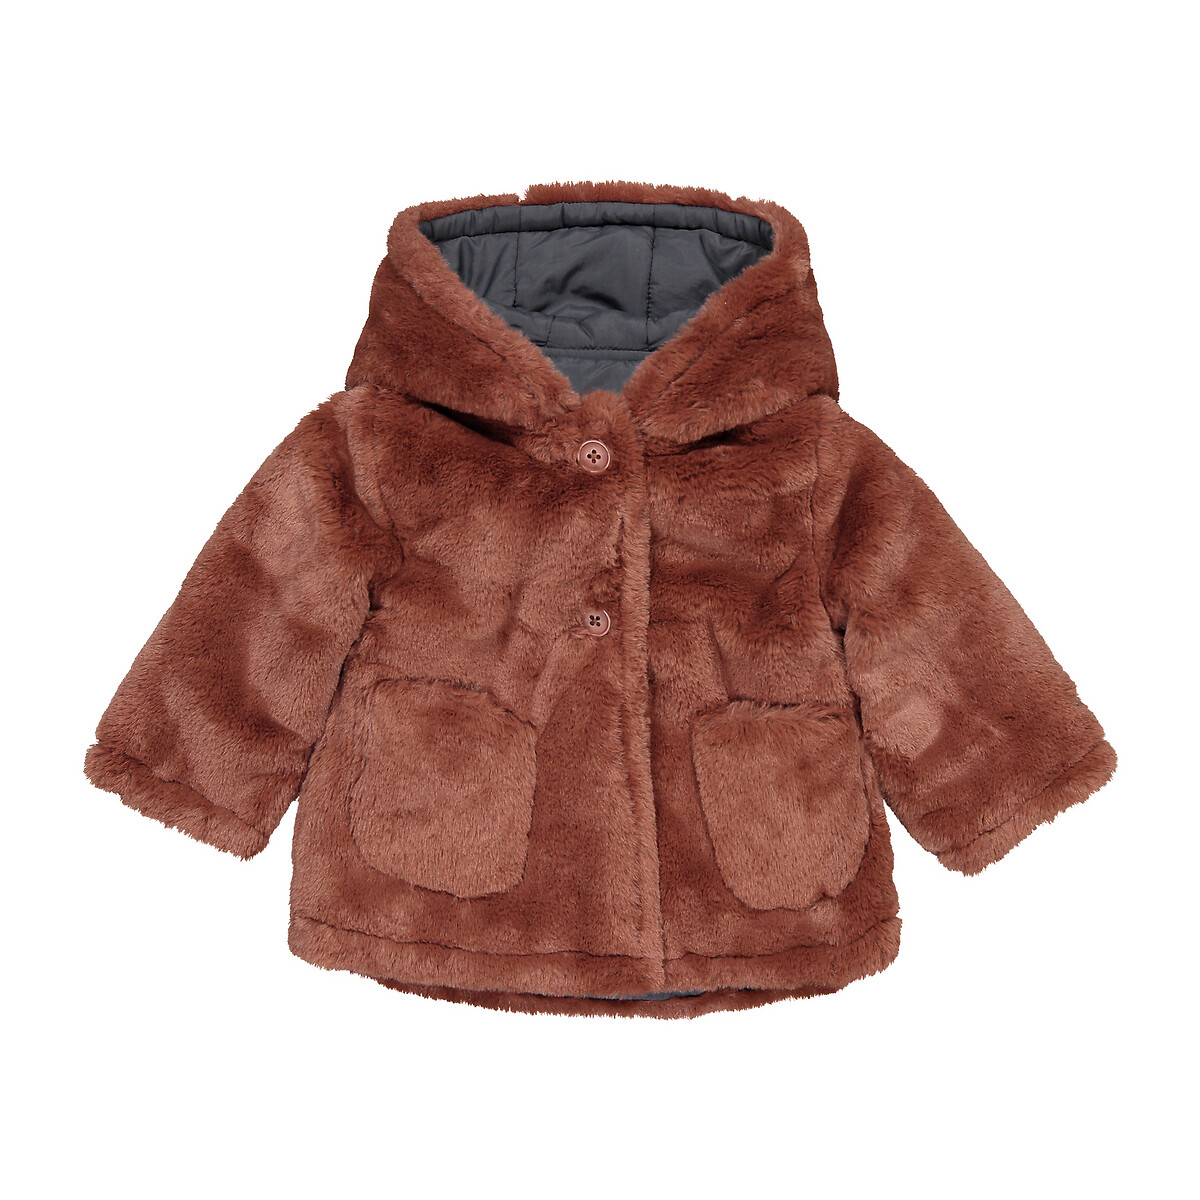 Пальто La Redoute Утепленное двустороннее с капюшоном 1 мес-3 года 3 года - 94 см каштановый, размер 3 года - 94 см - фото 5